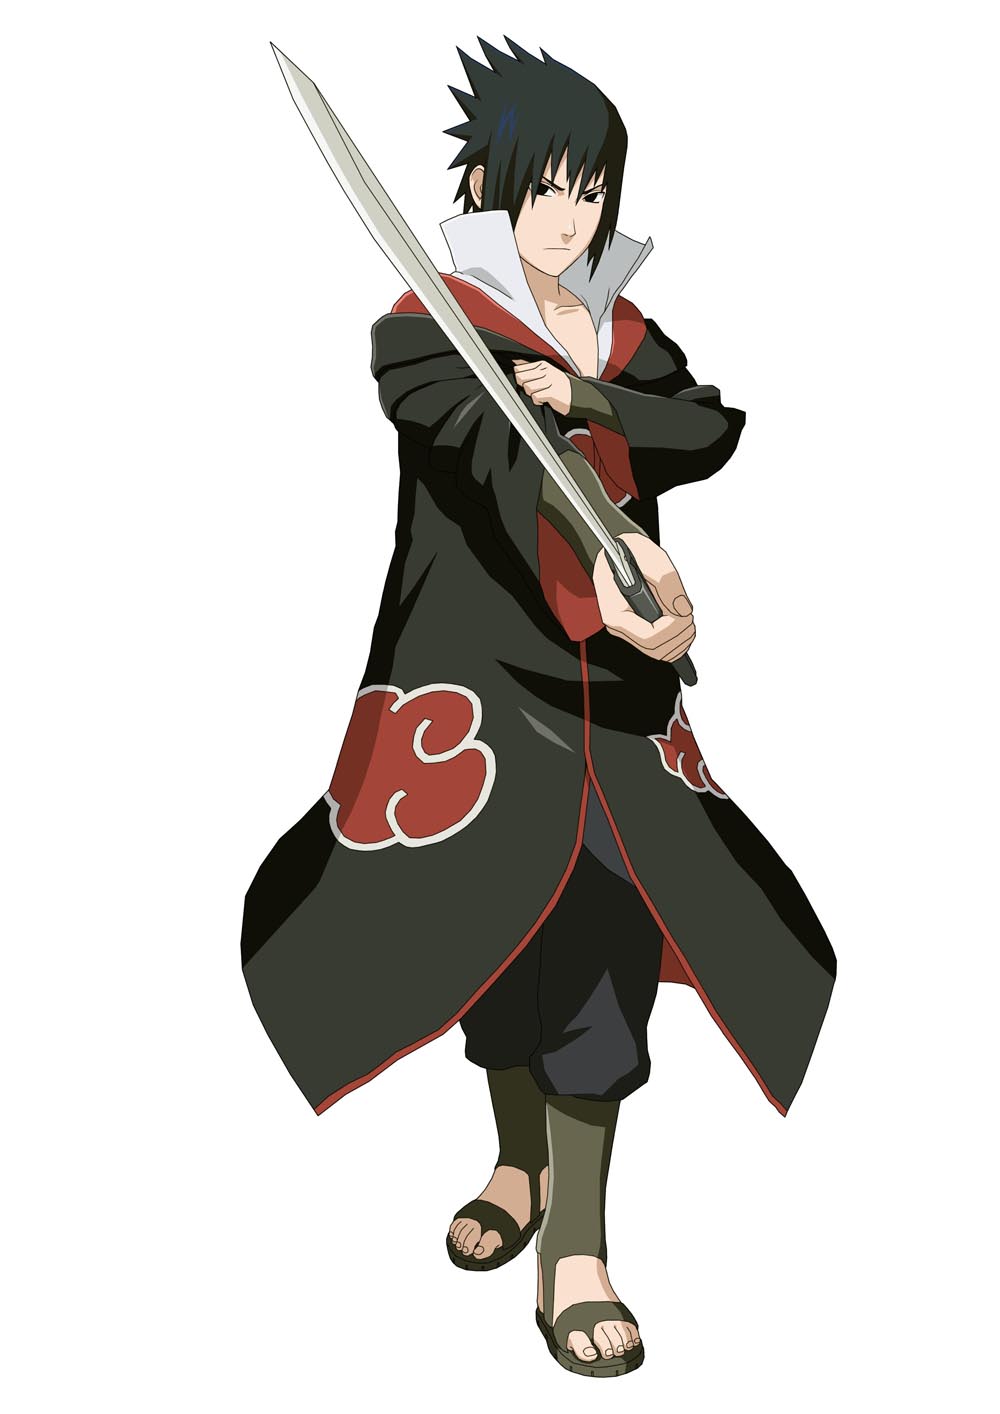 Hình ảnh uchiha sasuke chất